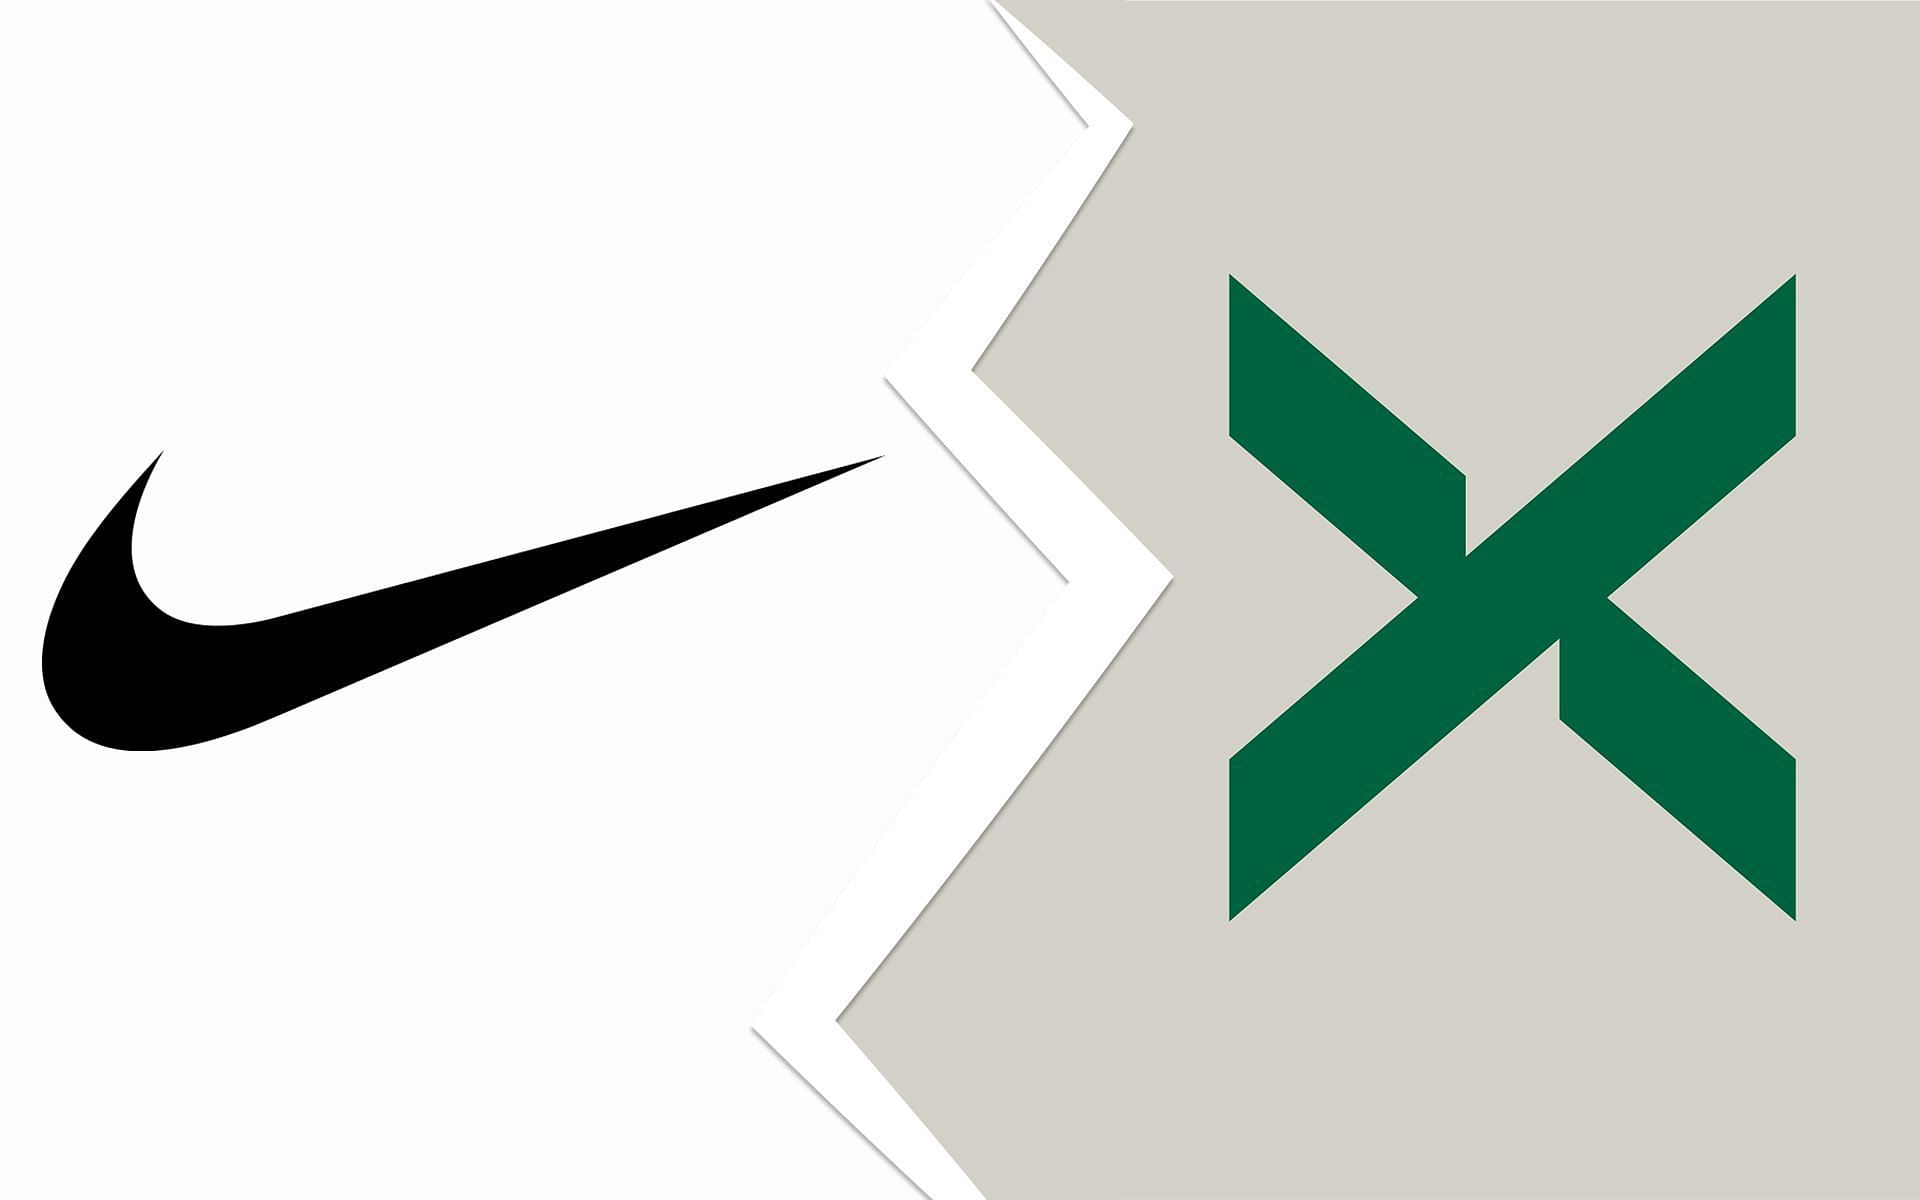 Nike X StockX counterfeit sneakers drama (Image via Nike/ @stockx/ Twitter)